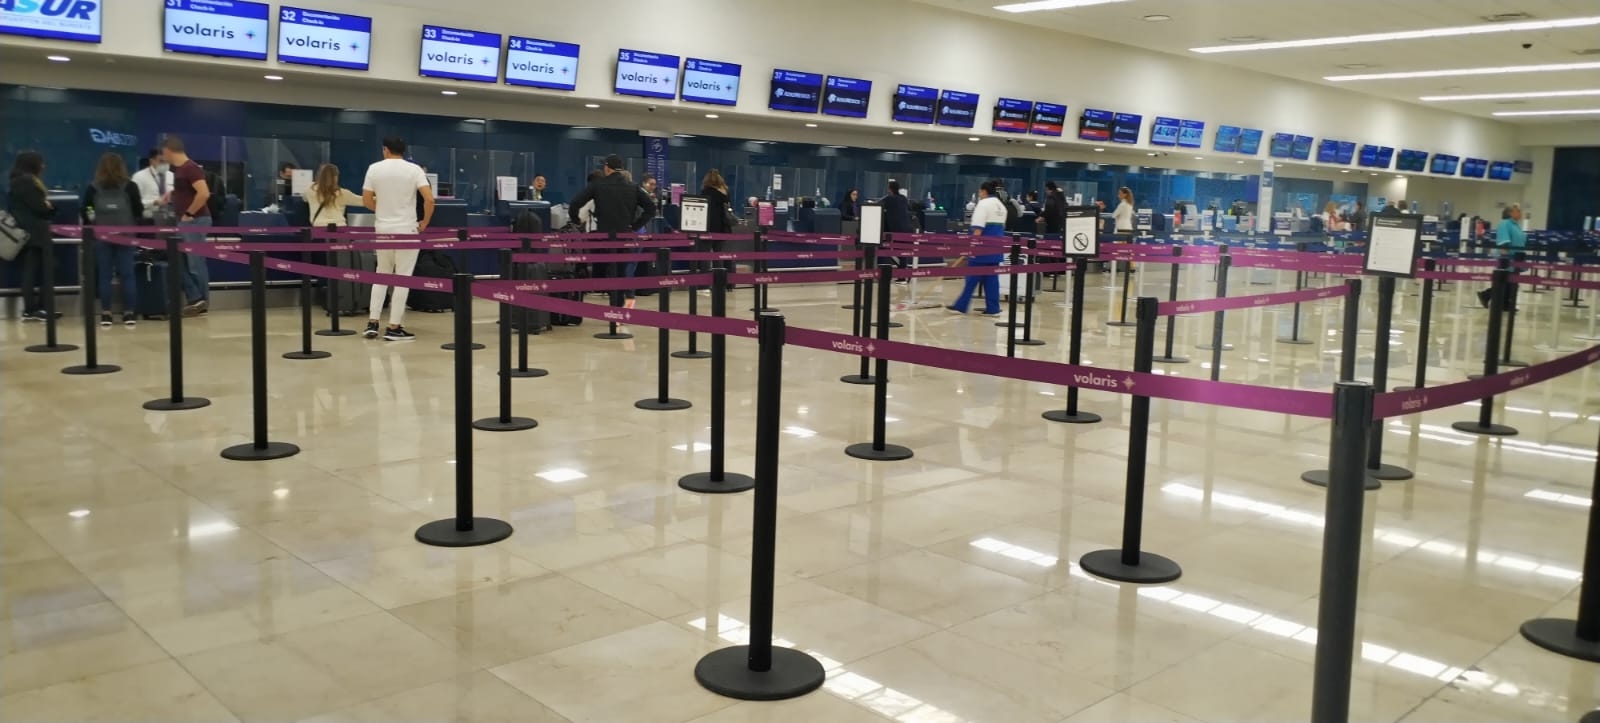 Sólo un vuelo de Aeroméxico fue cancelado en el aeropuerto de Mérida este viernes